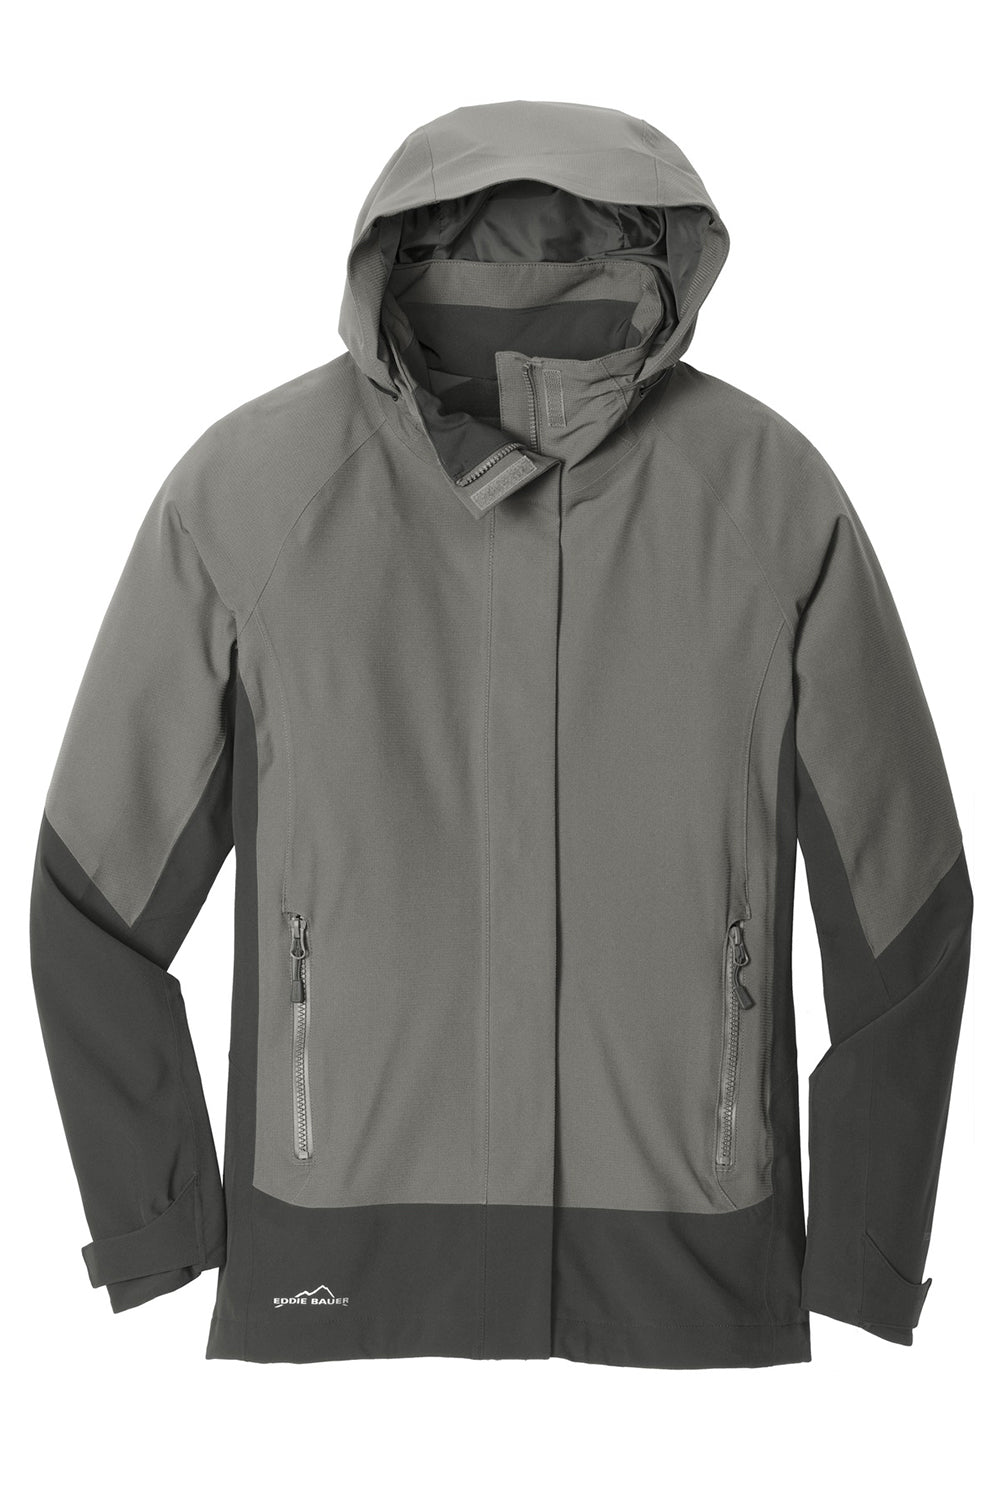 Eddie Bauer EB559 Womens WeatherEdge Waterproof Full Zip Hooded Jacket Metal Grey Flat Front